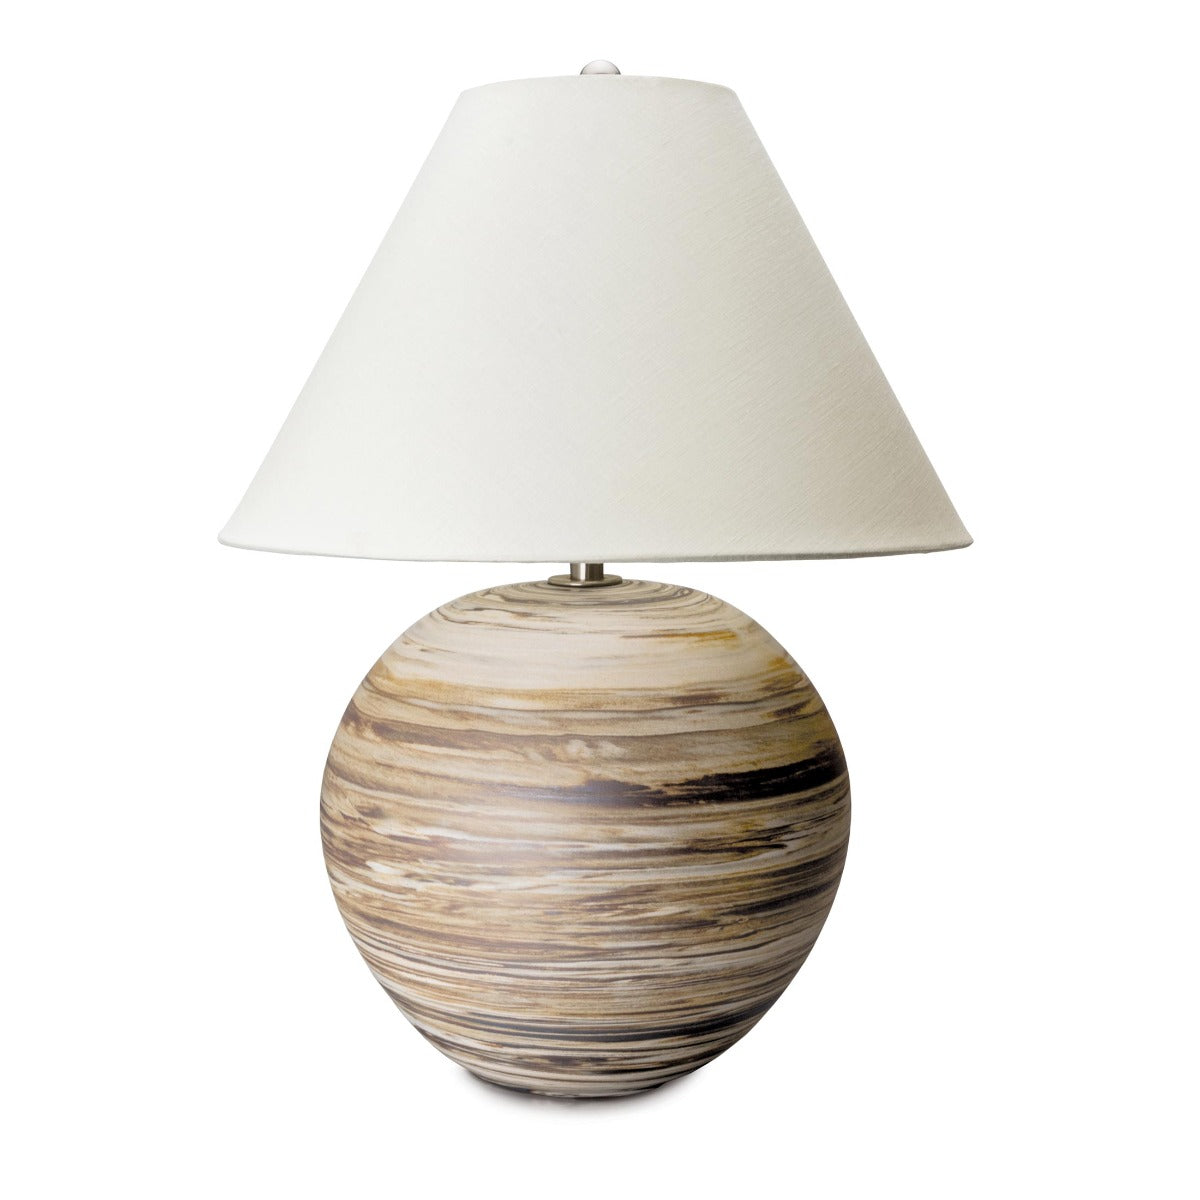 Beachstone Lamp, Round